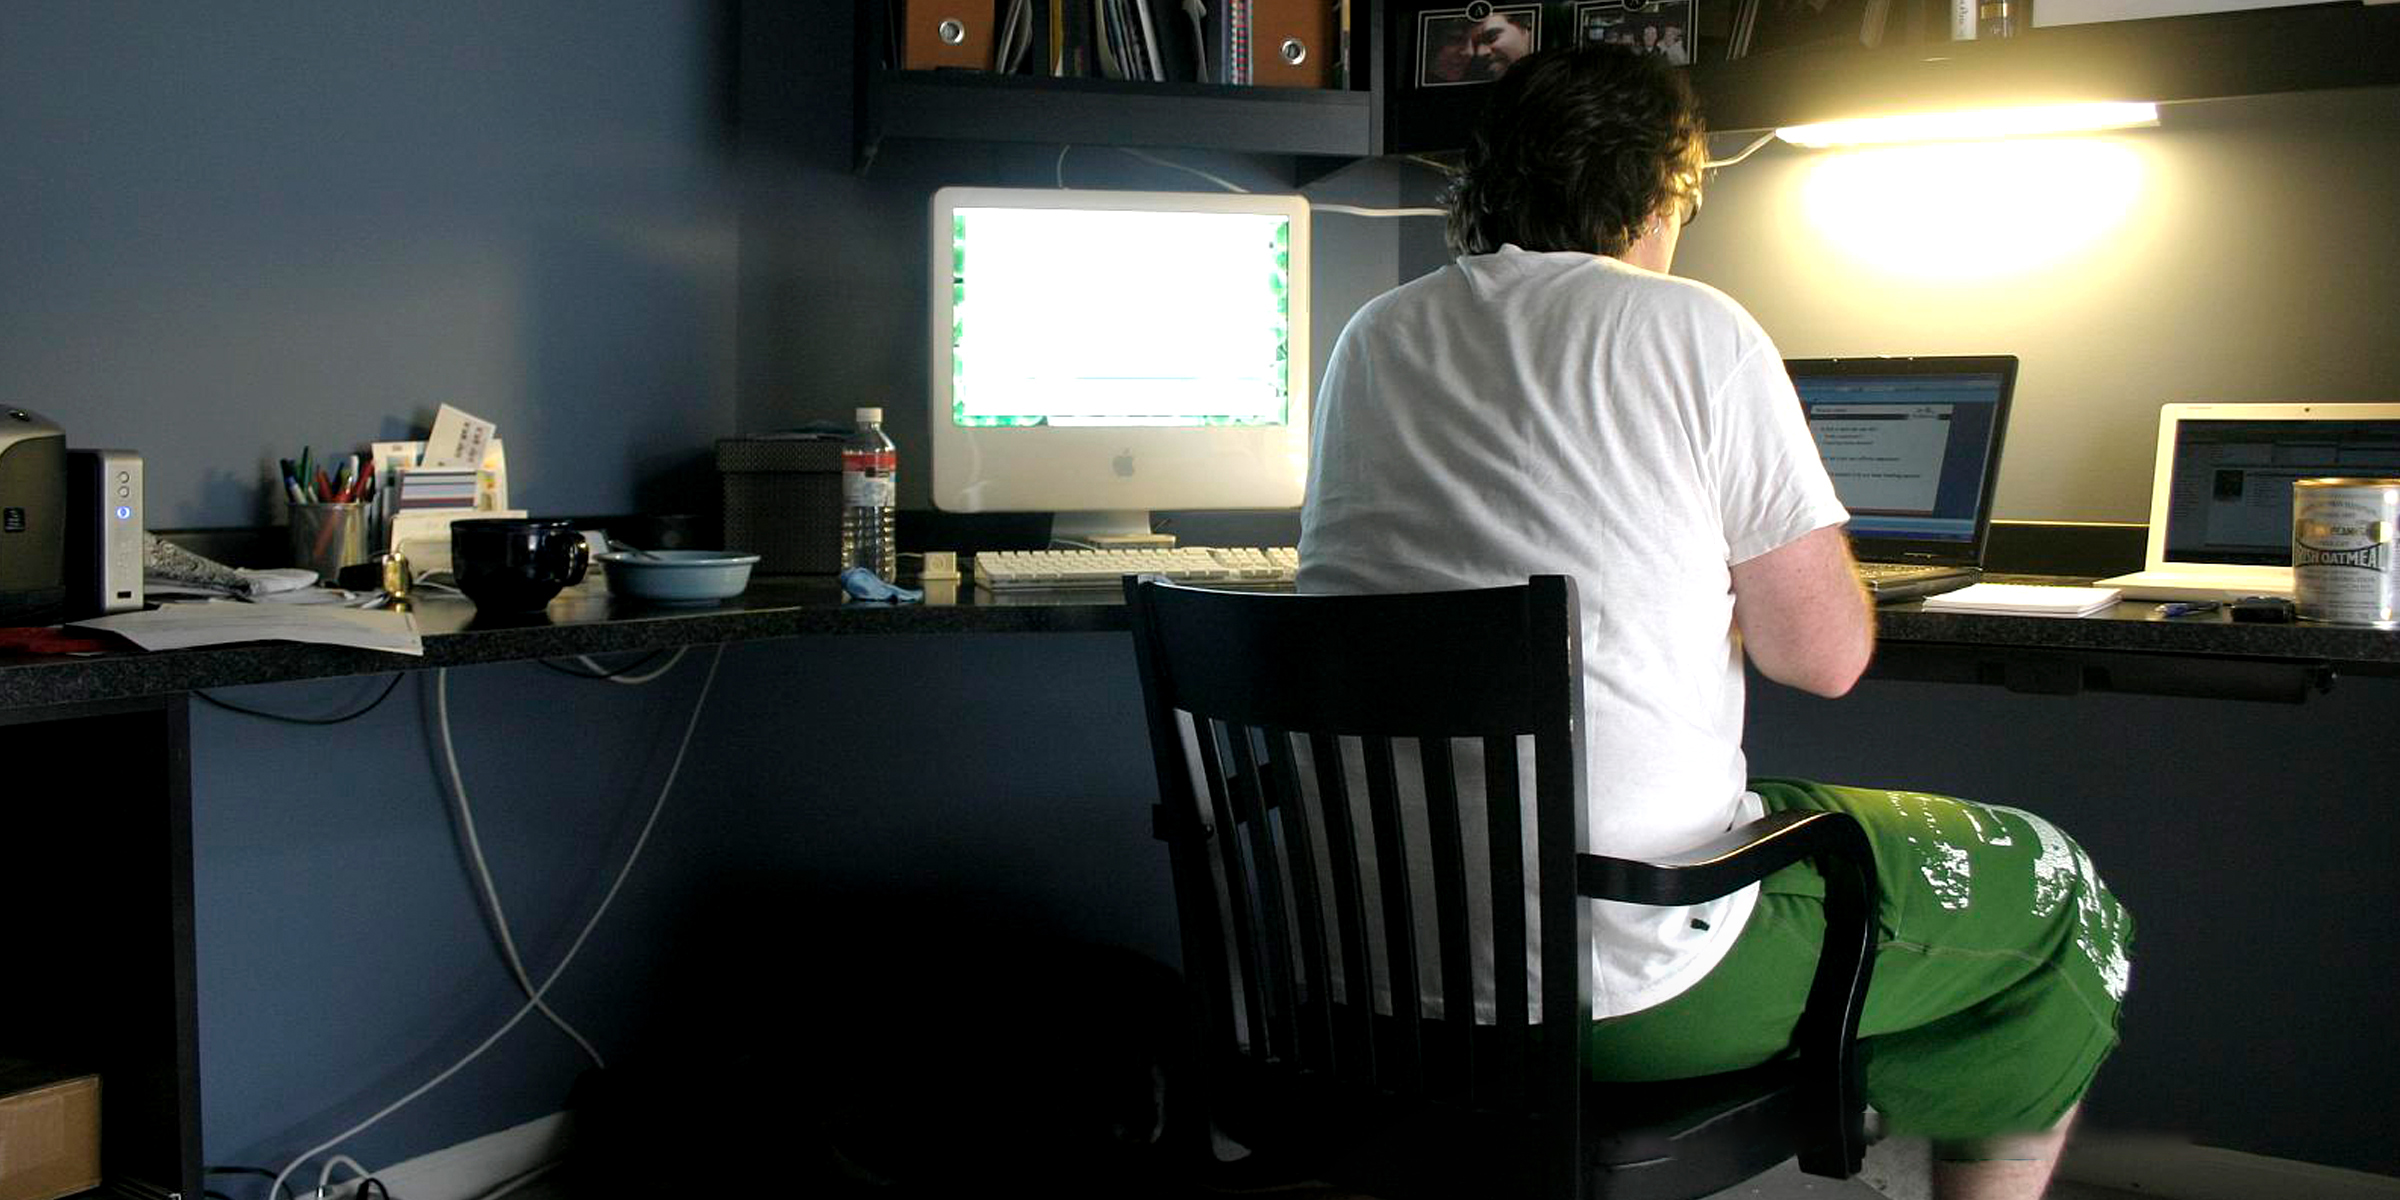 Un hombre utilizando un ordenador portátil en casa | Foto: Flickr.com/ishane (CC BY 2.0)